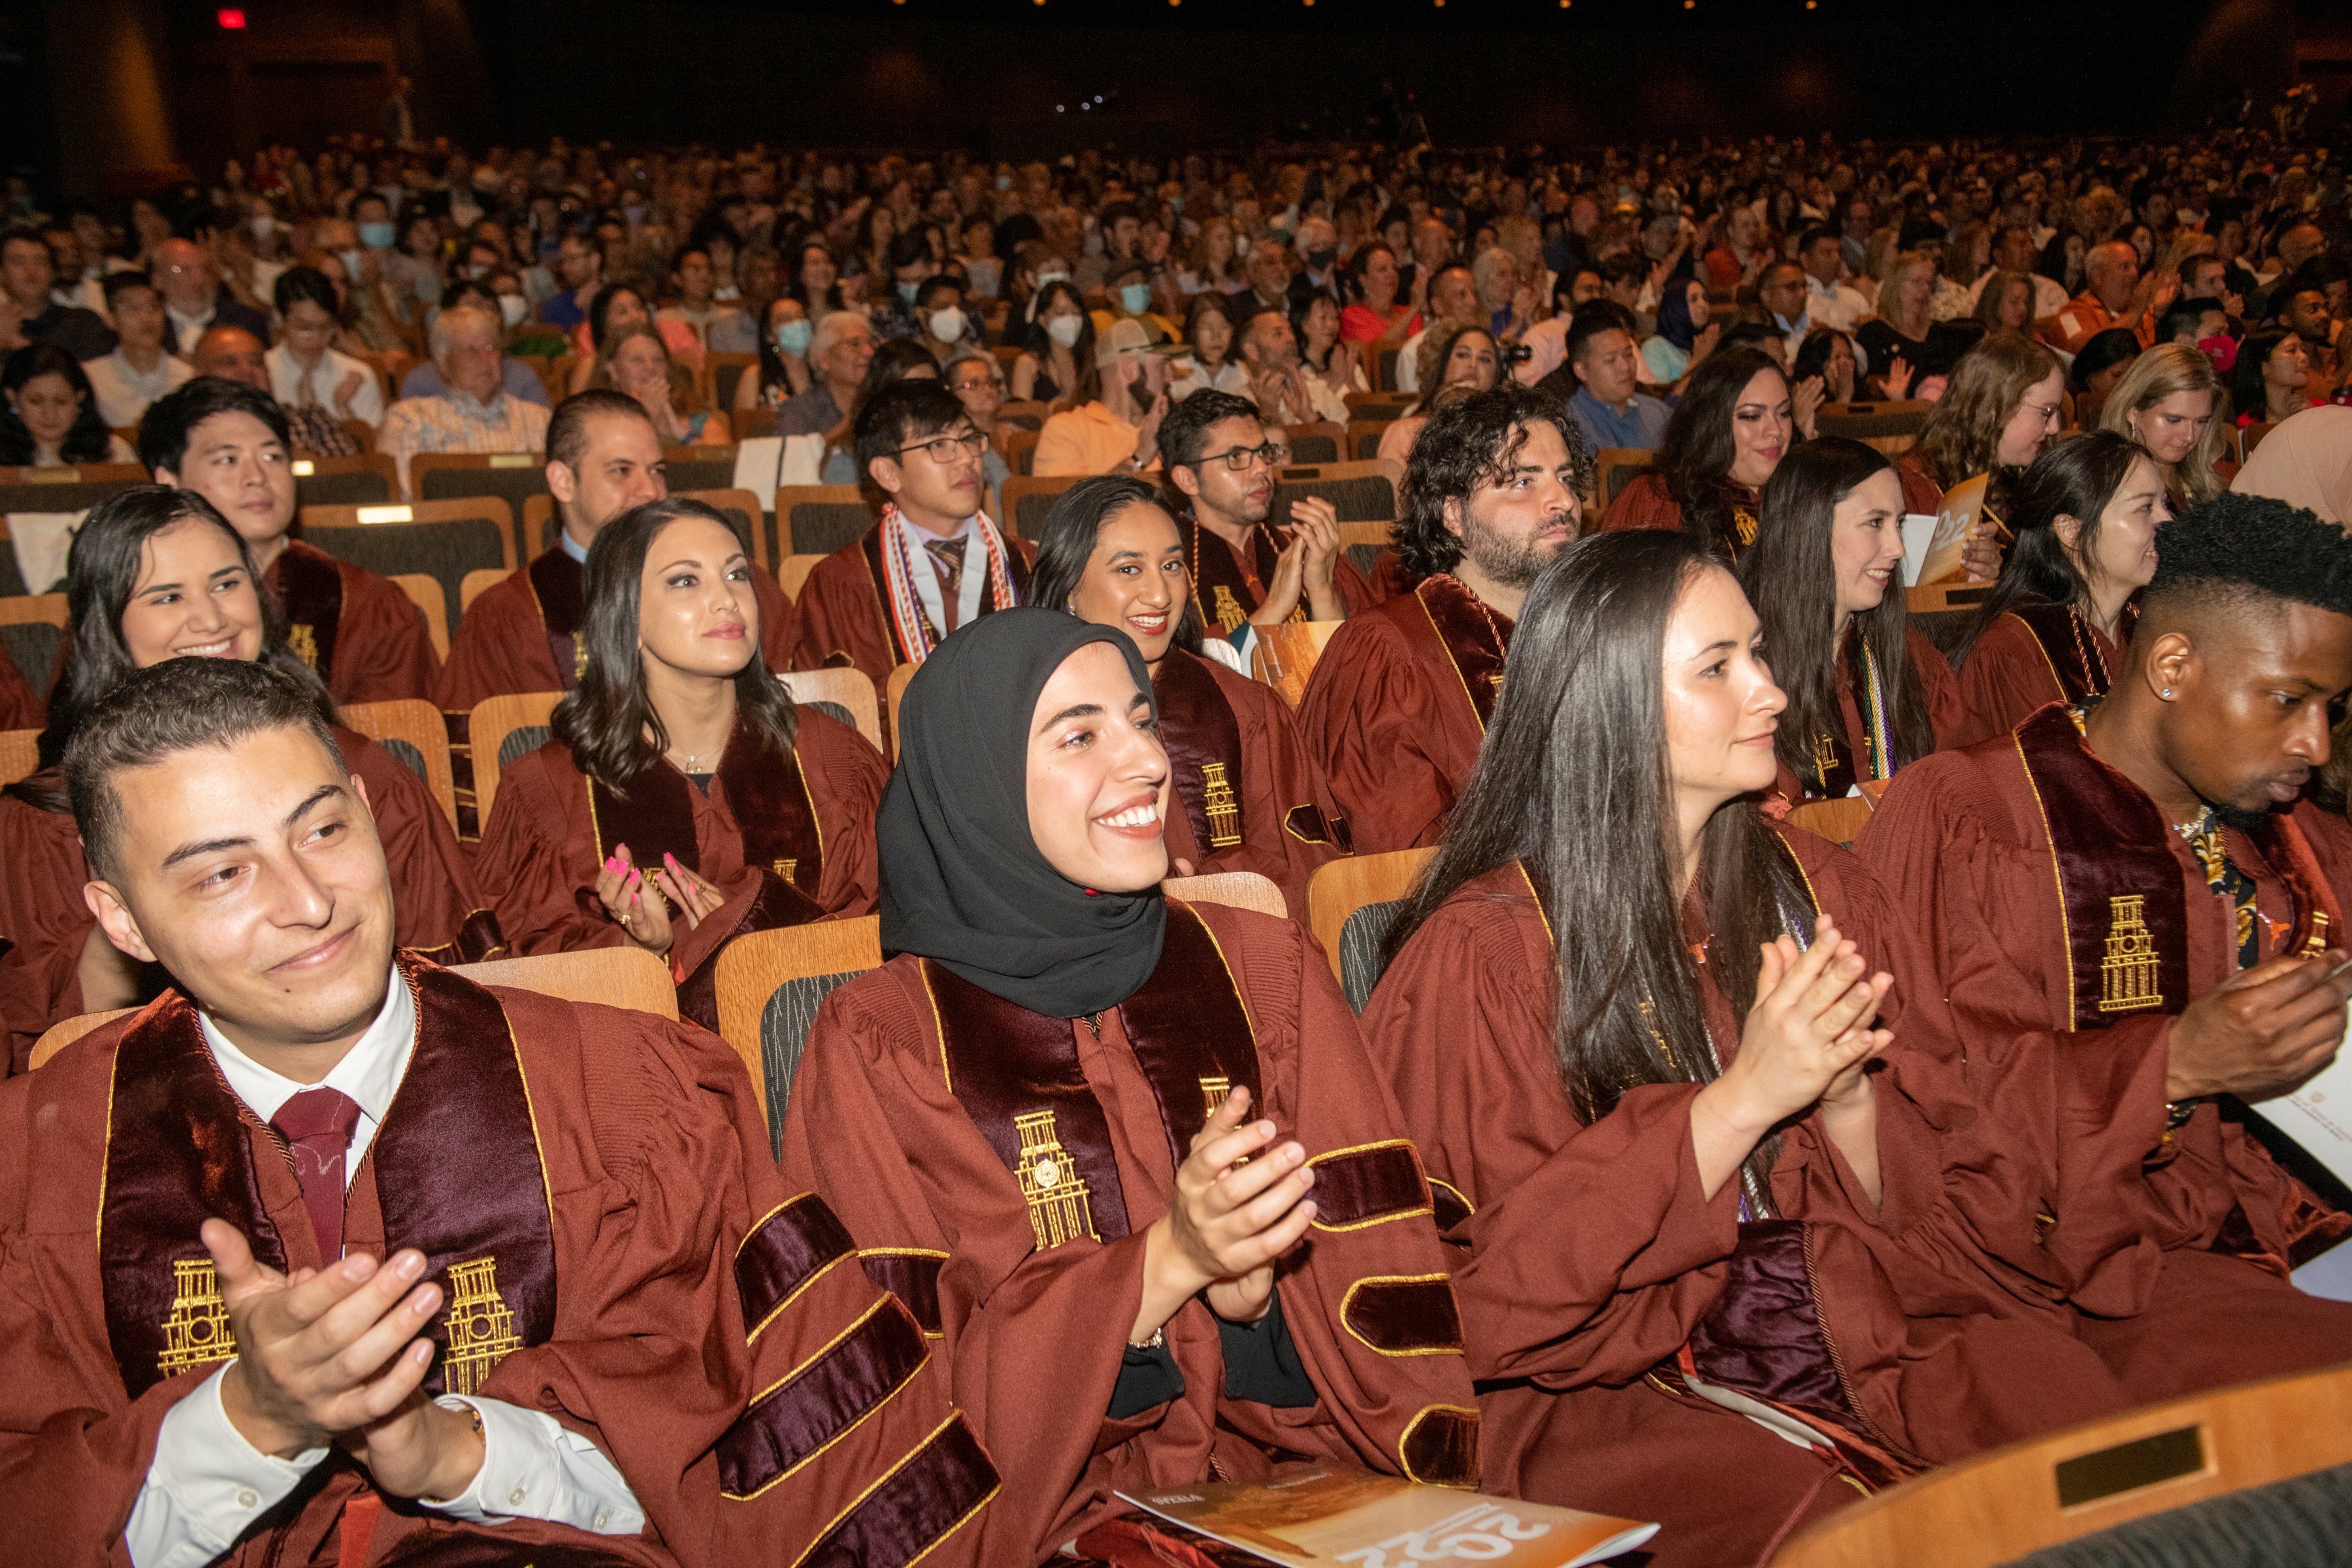 Class of 2022 graduates celebrating in the auditorium.